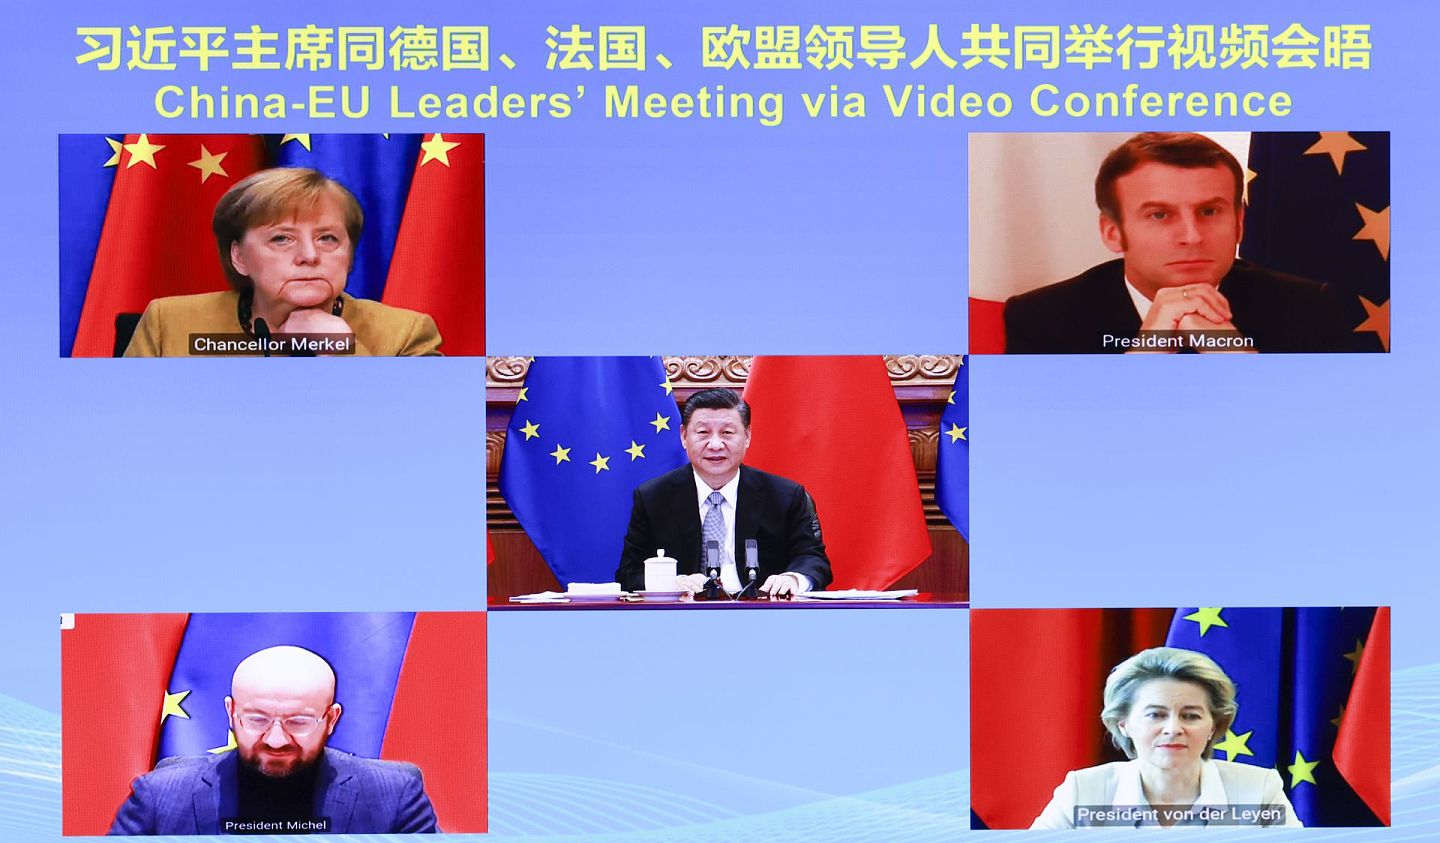 2020年12月30日晚，中国国家主席习近平在北京同德国总理默克尔、法国总统马克龙、欧洲理事会主席米歇尔、欧盟委员会主席冯德莱恩举行视频会晤。中欧领导人共同宣布如期完成中欧投资协定谈判。（新华社）